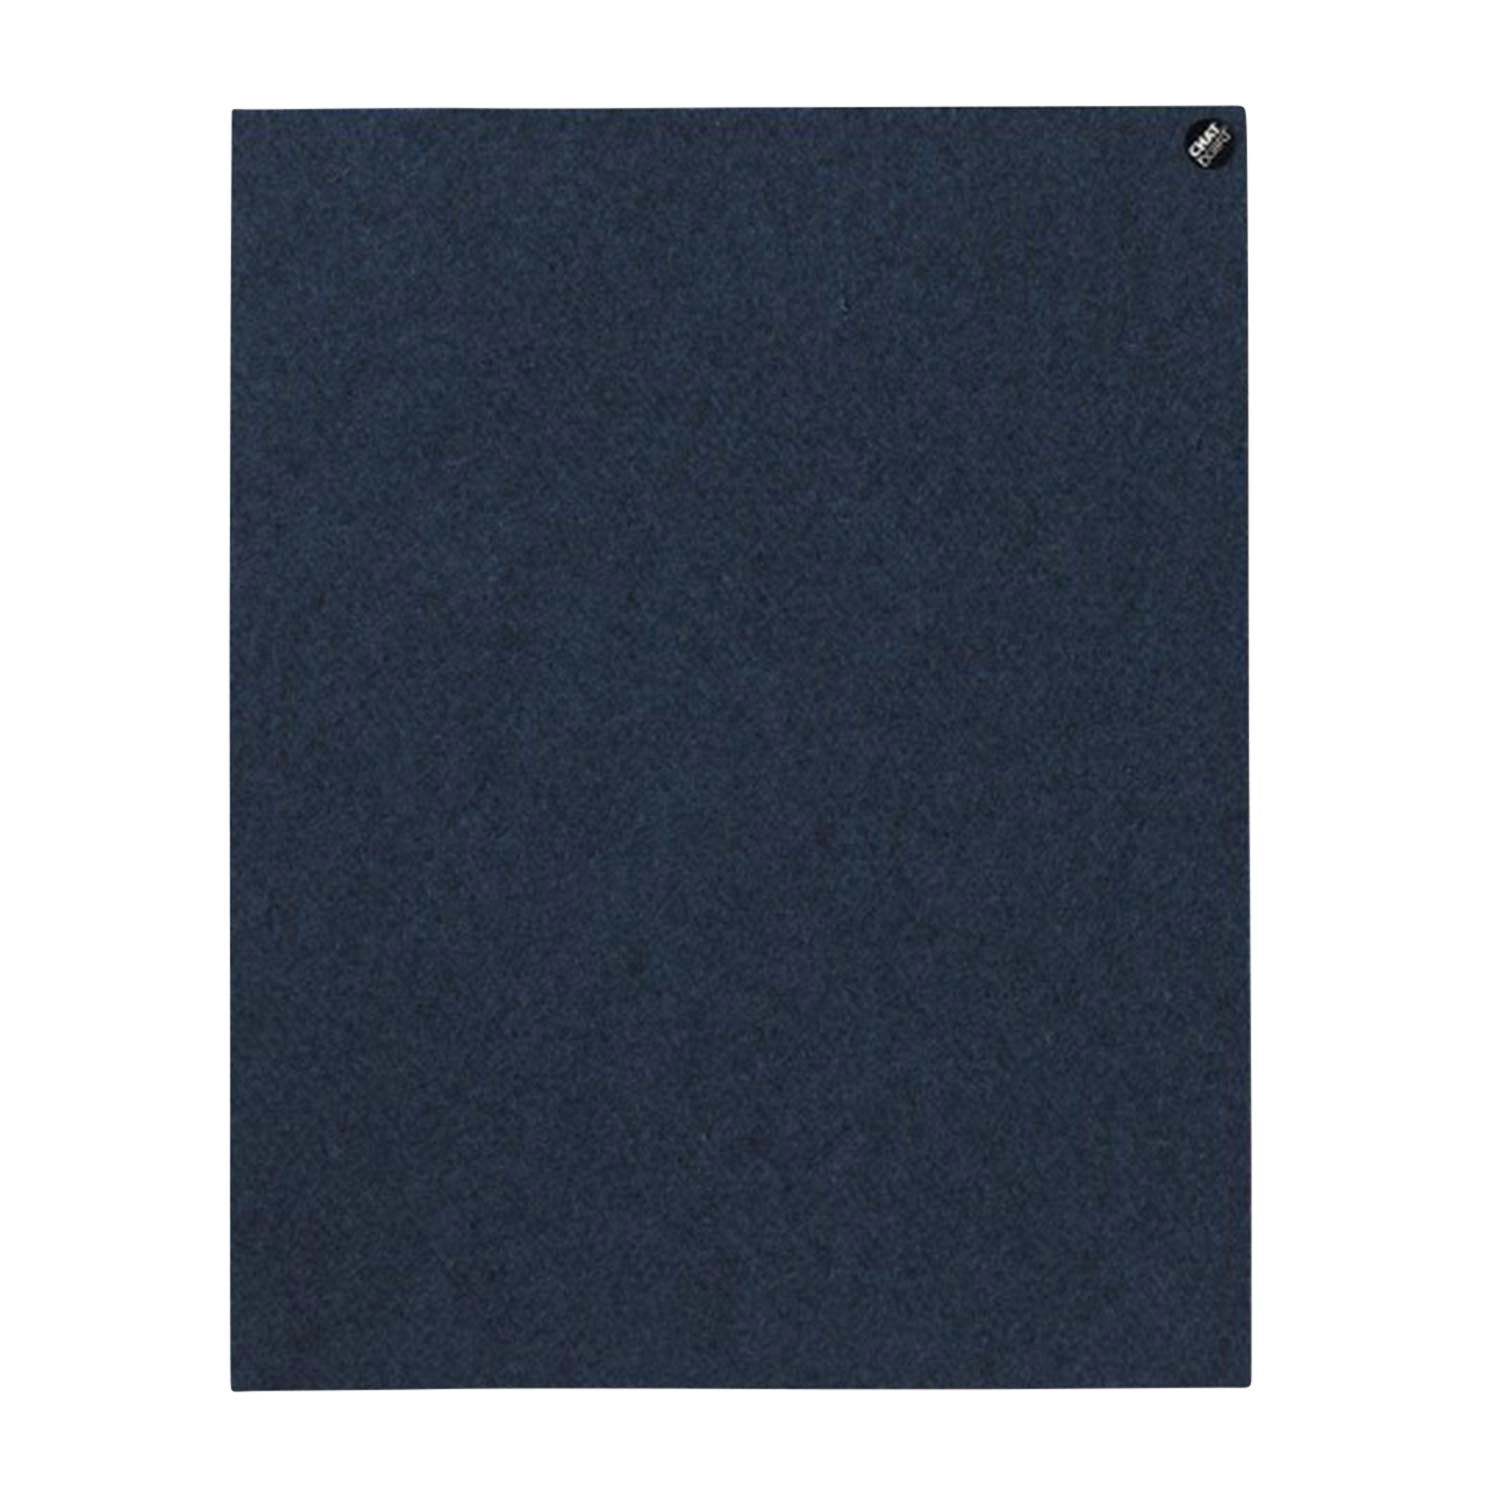 BuzziFelt Pinnwand, Grösse 80 x 50 cm, Ausrichtung horizontal, Buzzifelt (Filz) 60 light blue von Chat Board